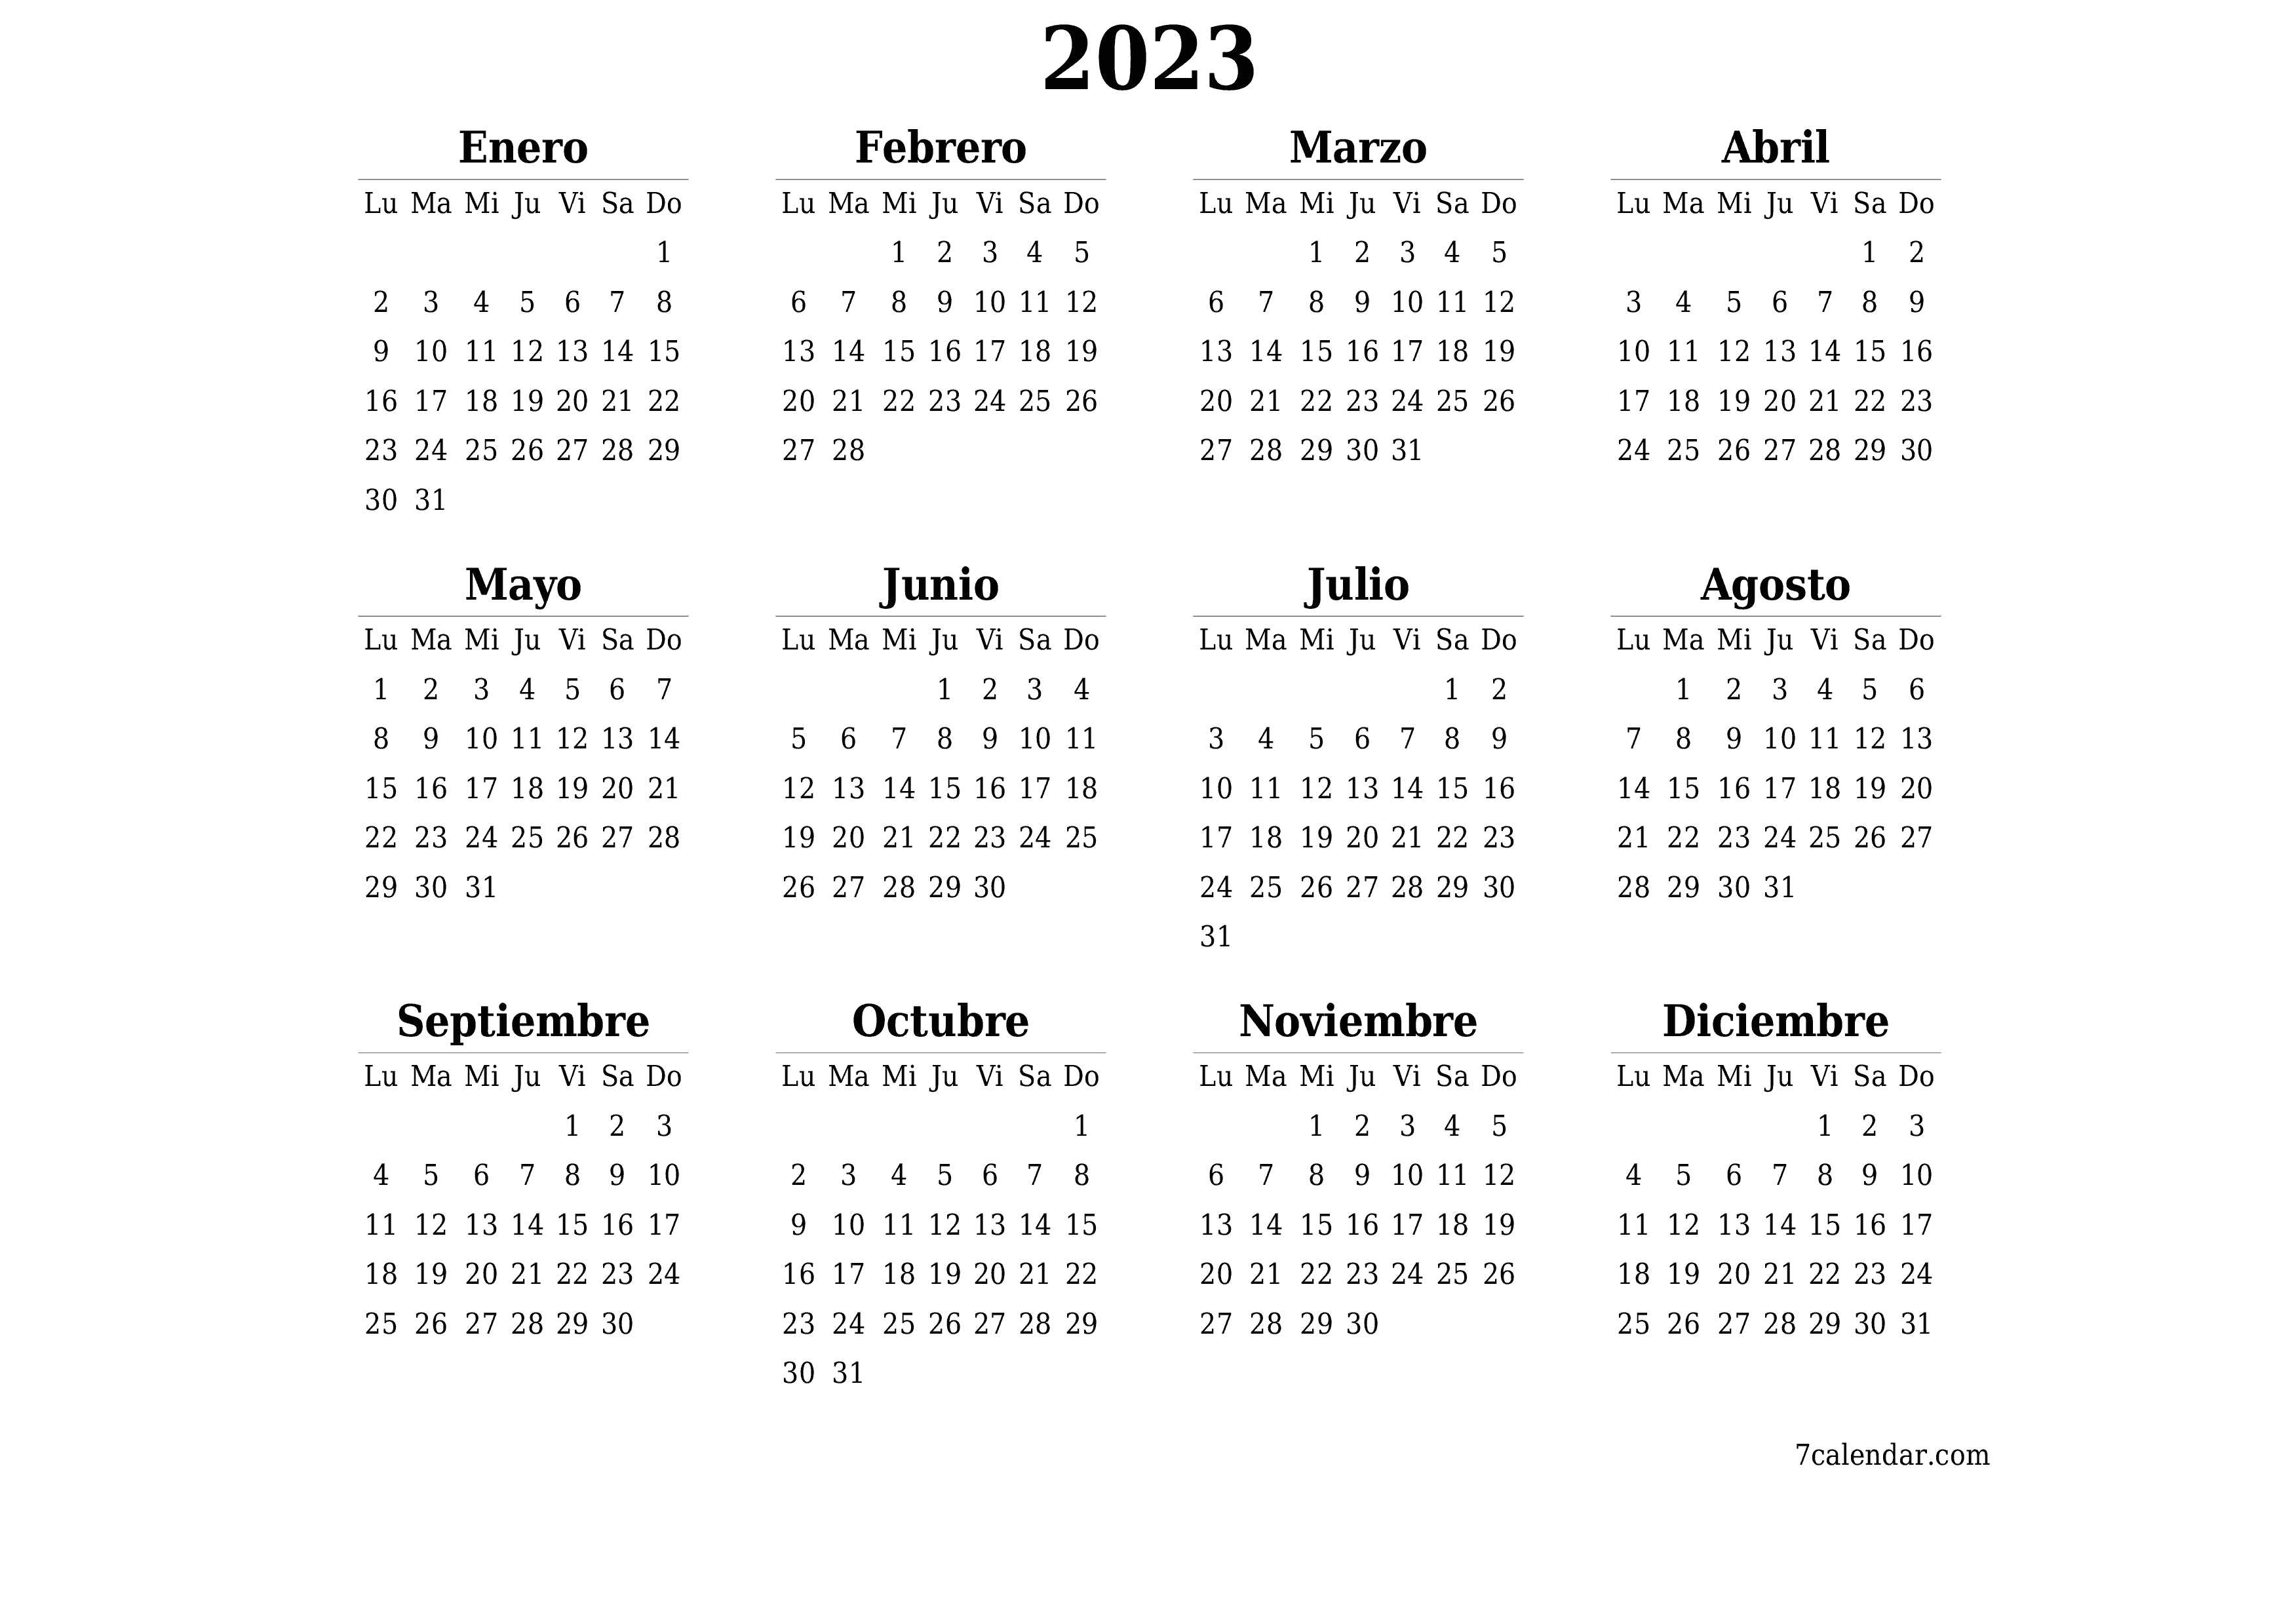 Calendario anual en blanco para el año 2023 guardar e imprimir en PDF PNG Spanish - 7calendar.com